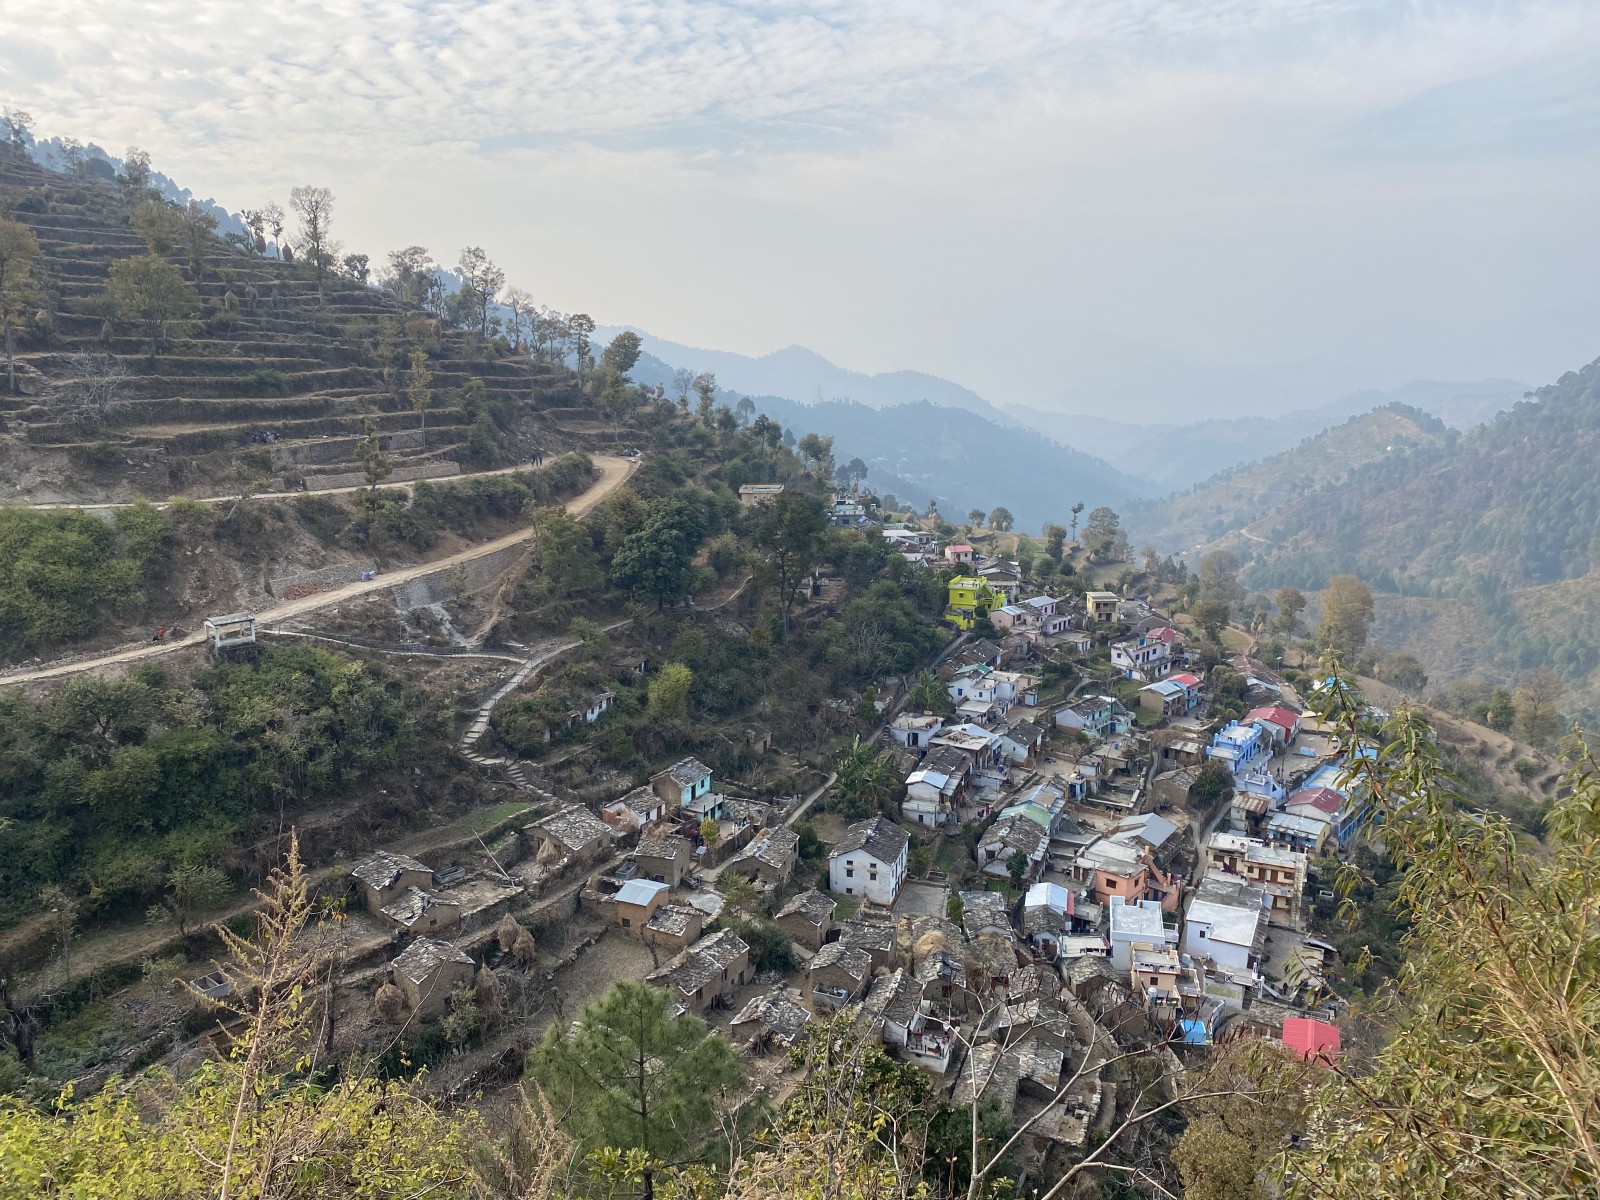 Kathur village, Pauri Garhwal